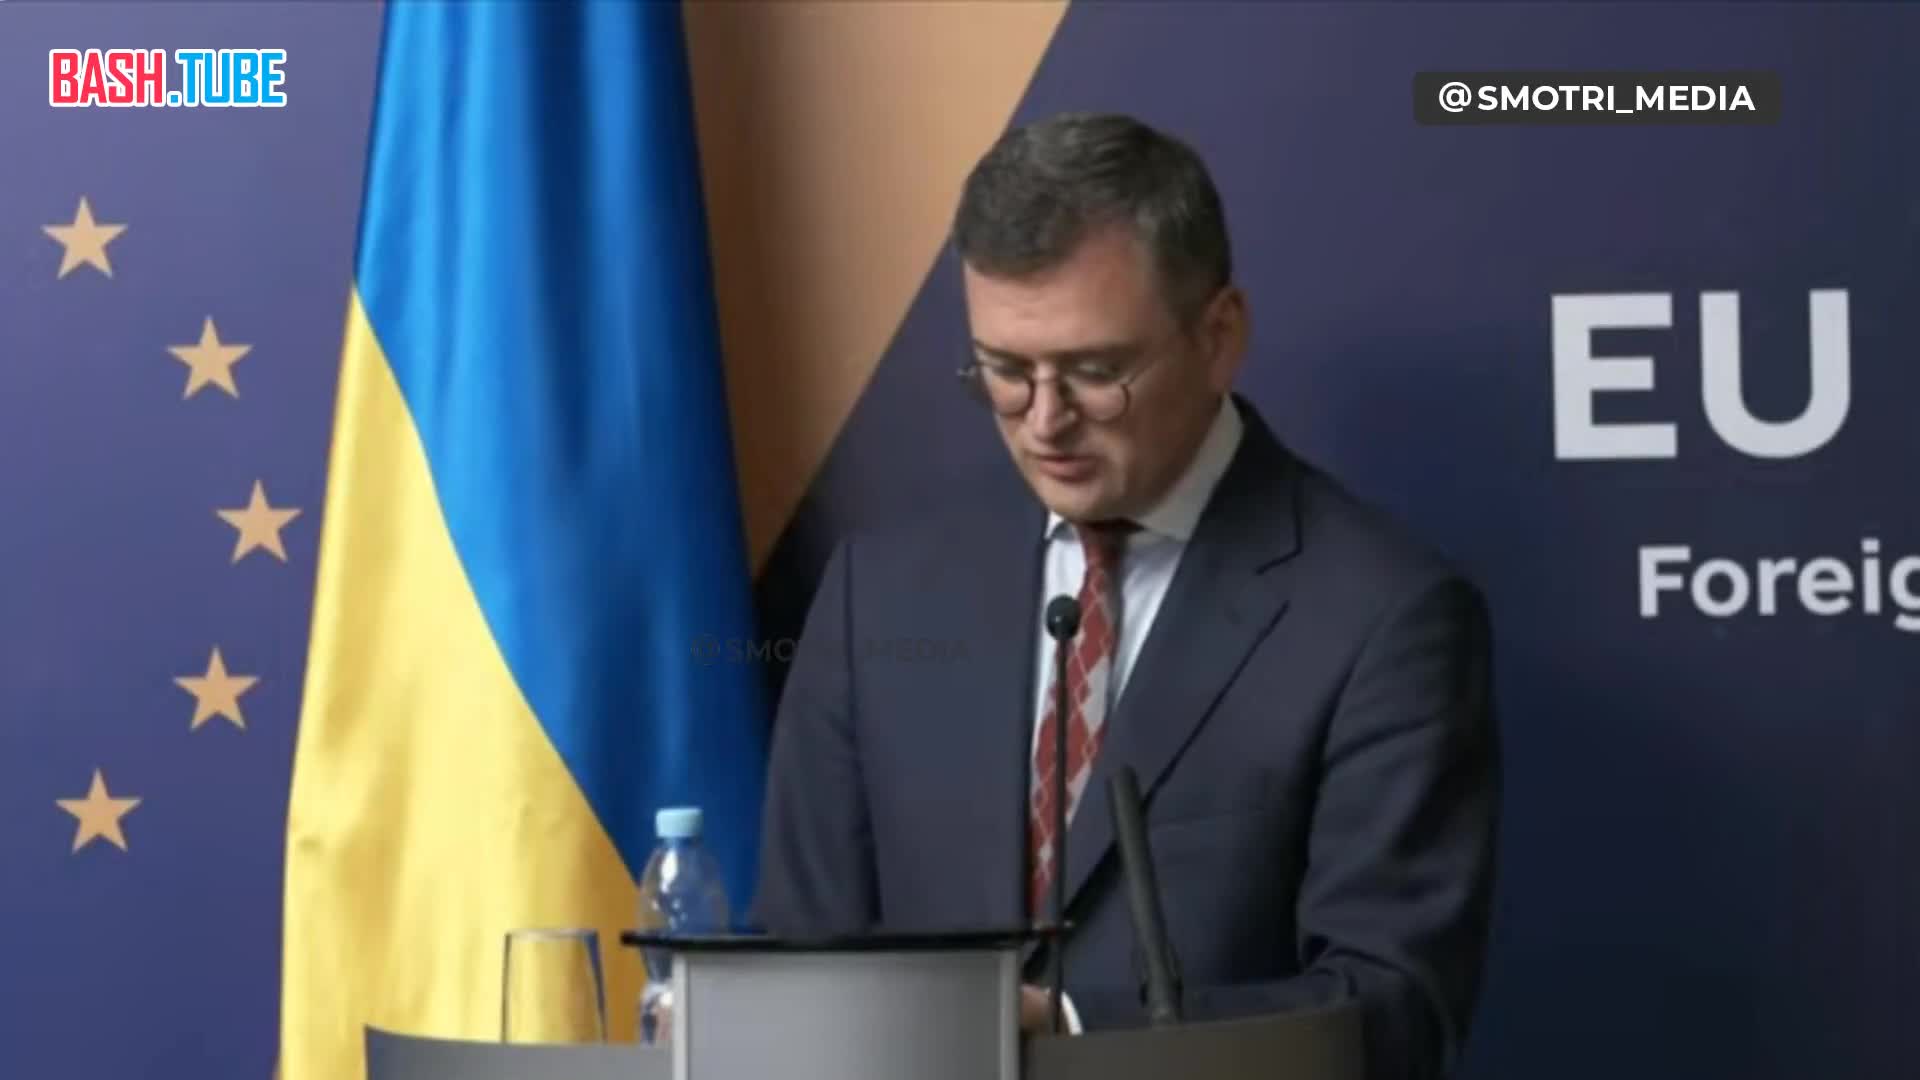  «Украина первосортная держава и ничего кроме первосортного членства (в ЕС) нас не устроит»